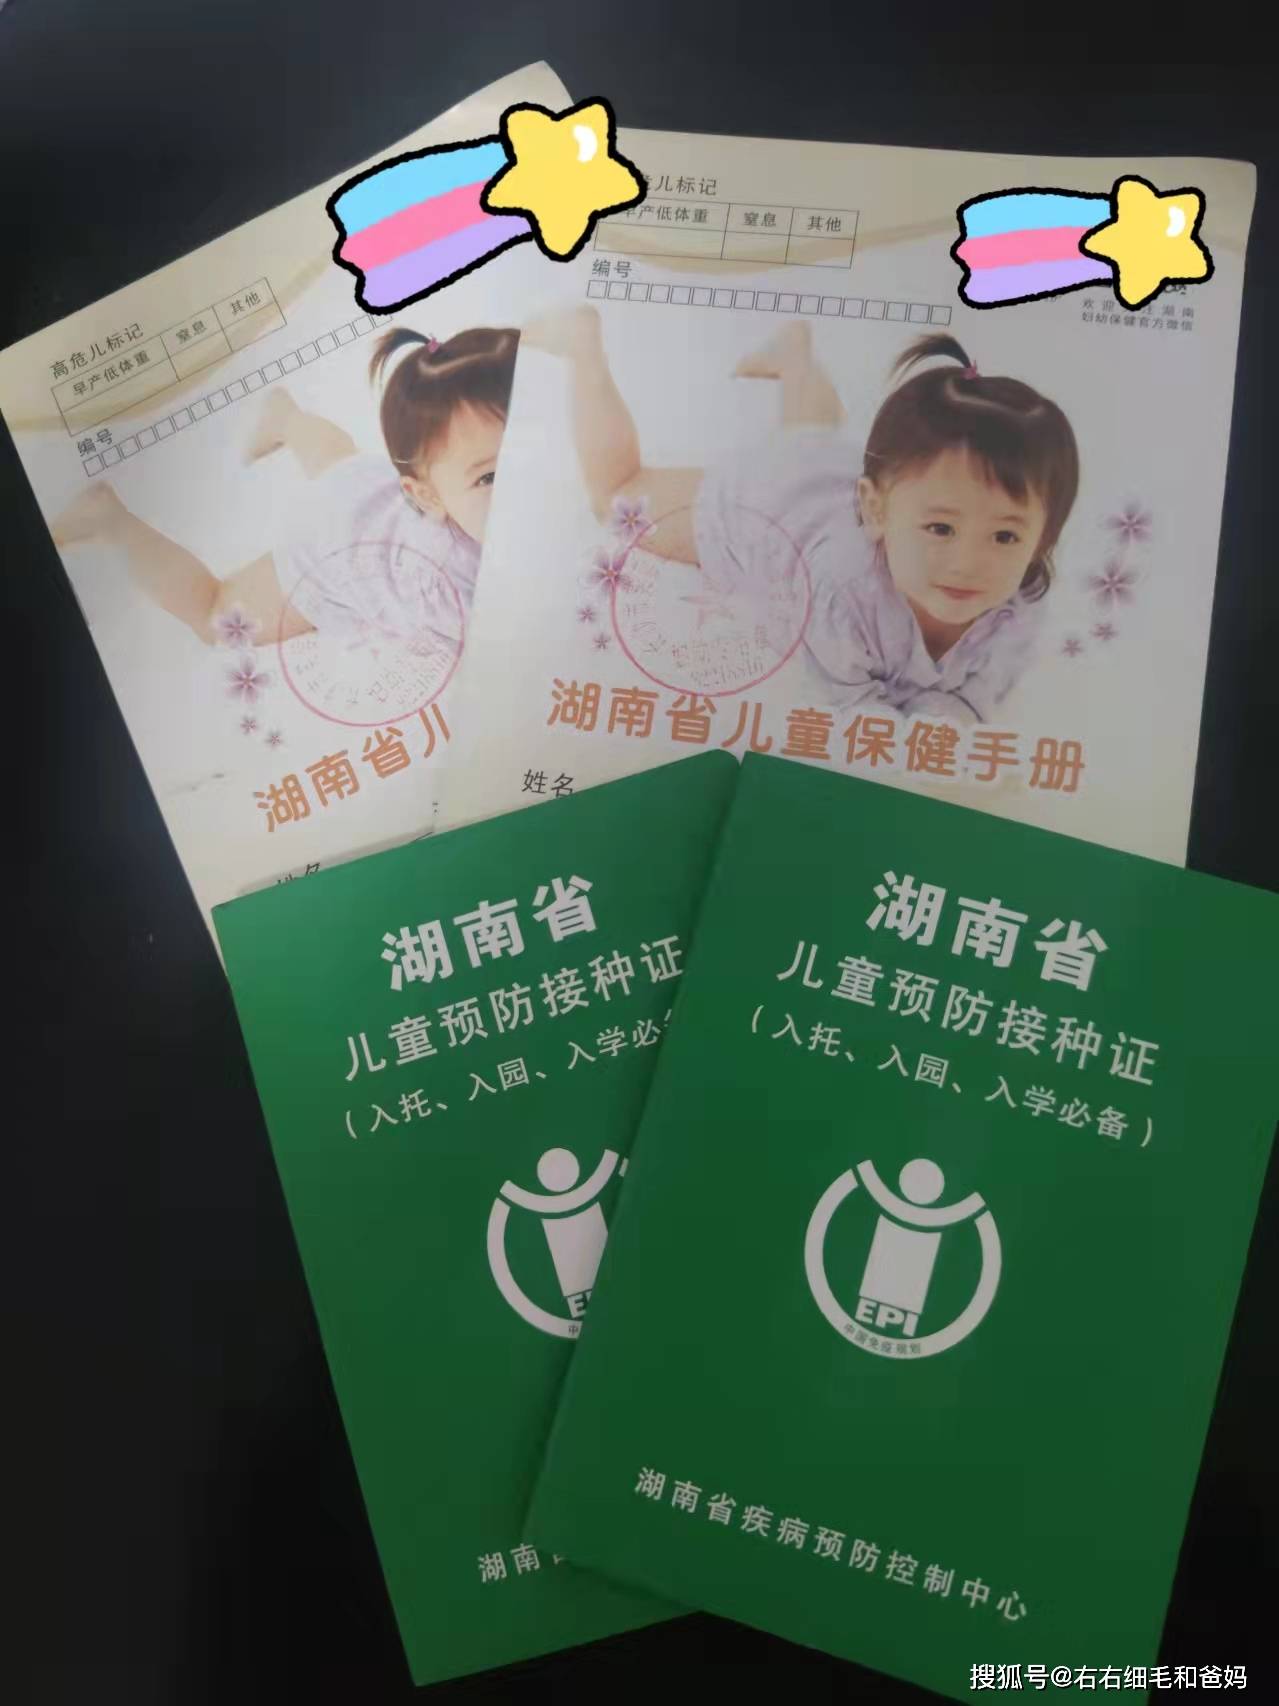 福建省儿童保健手册图片